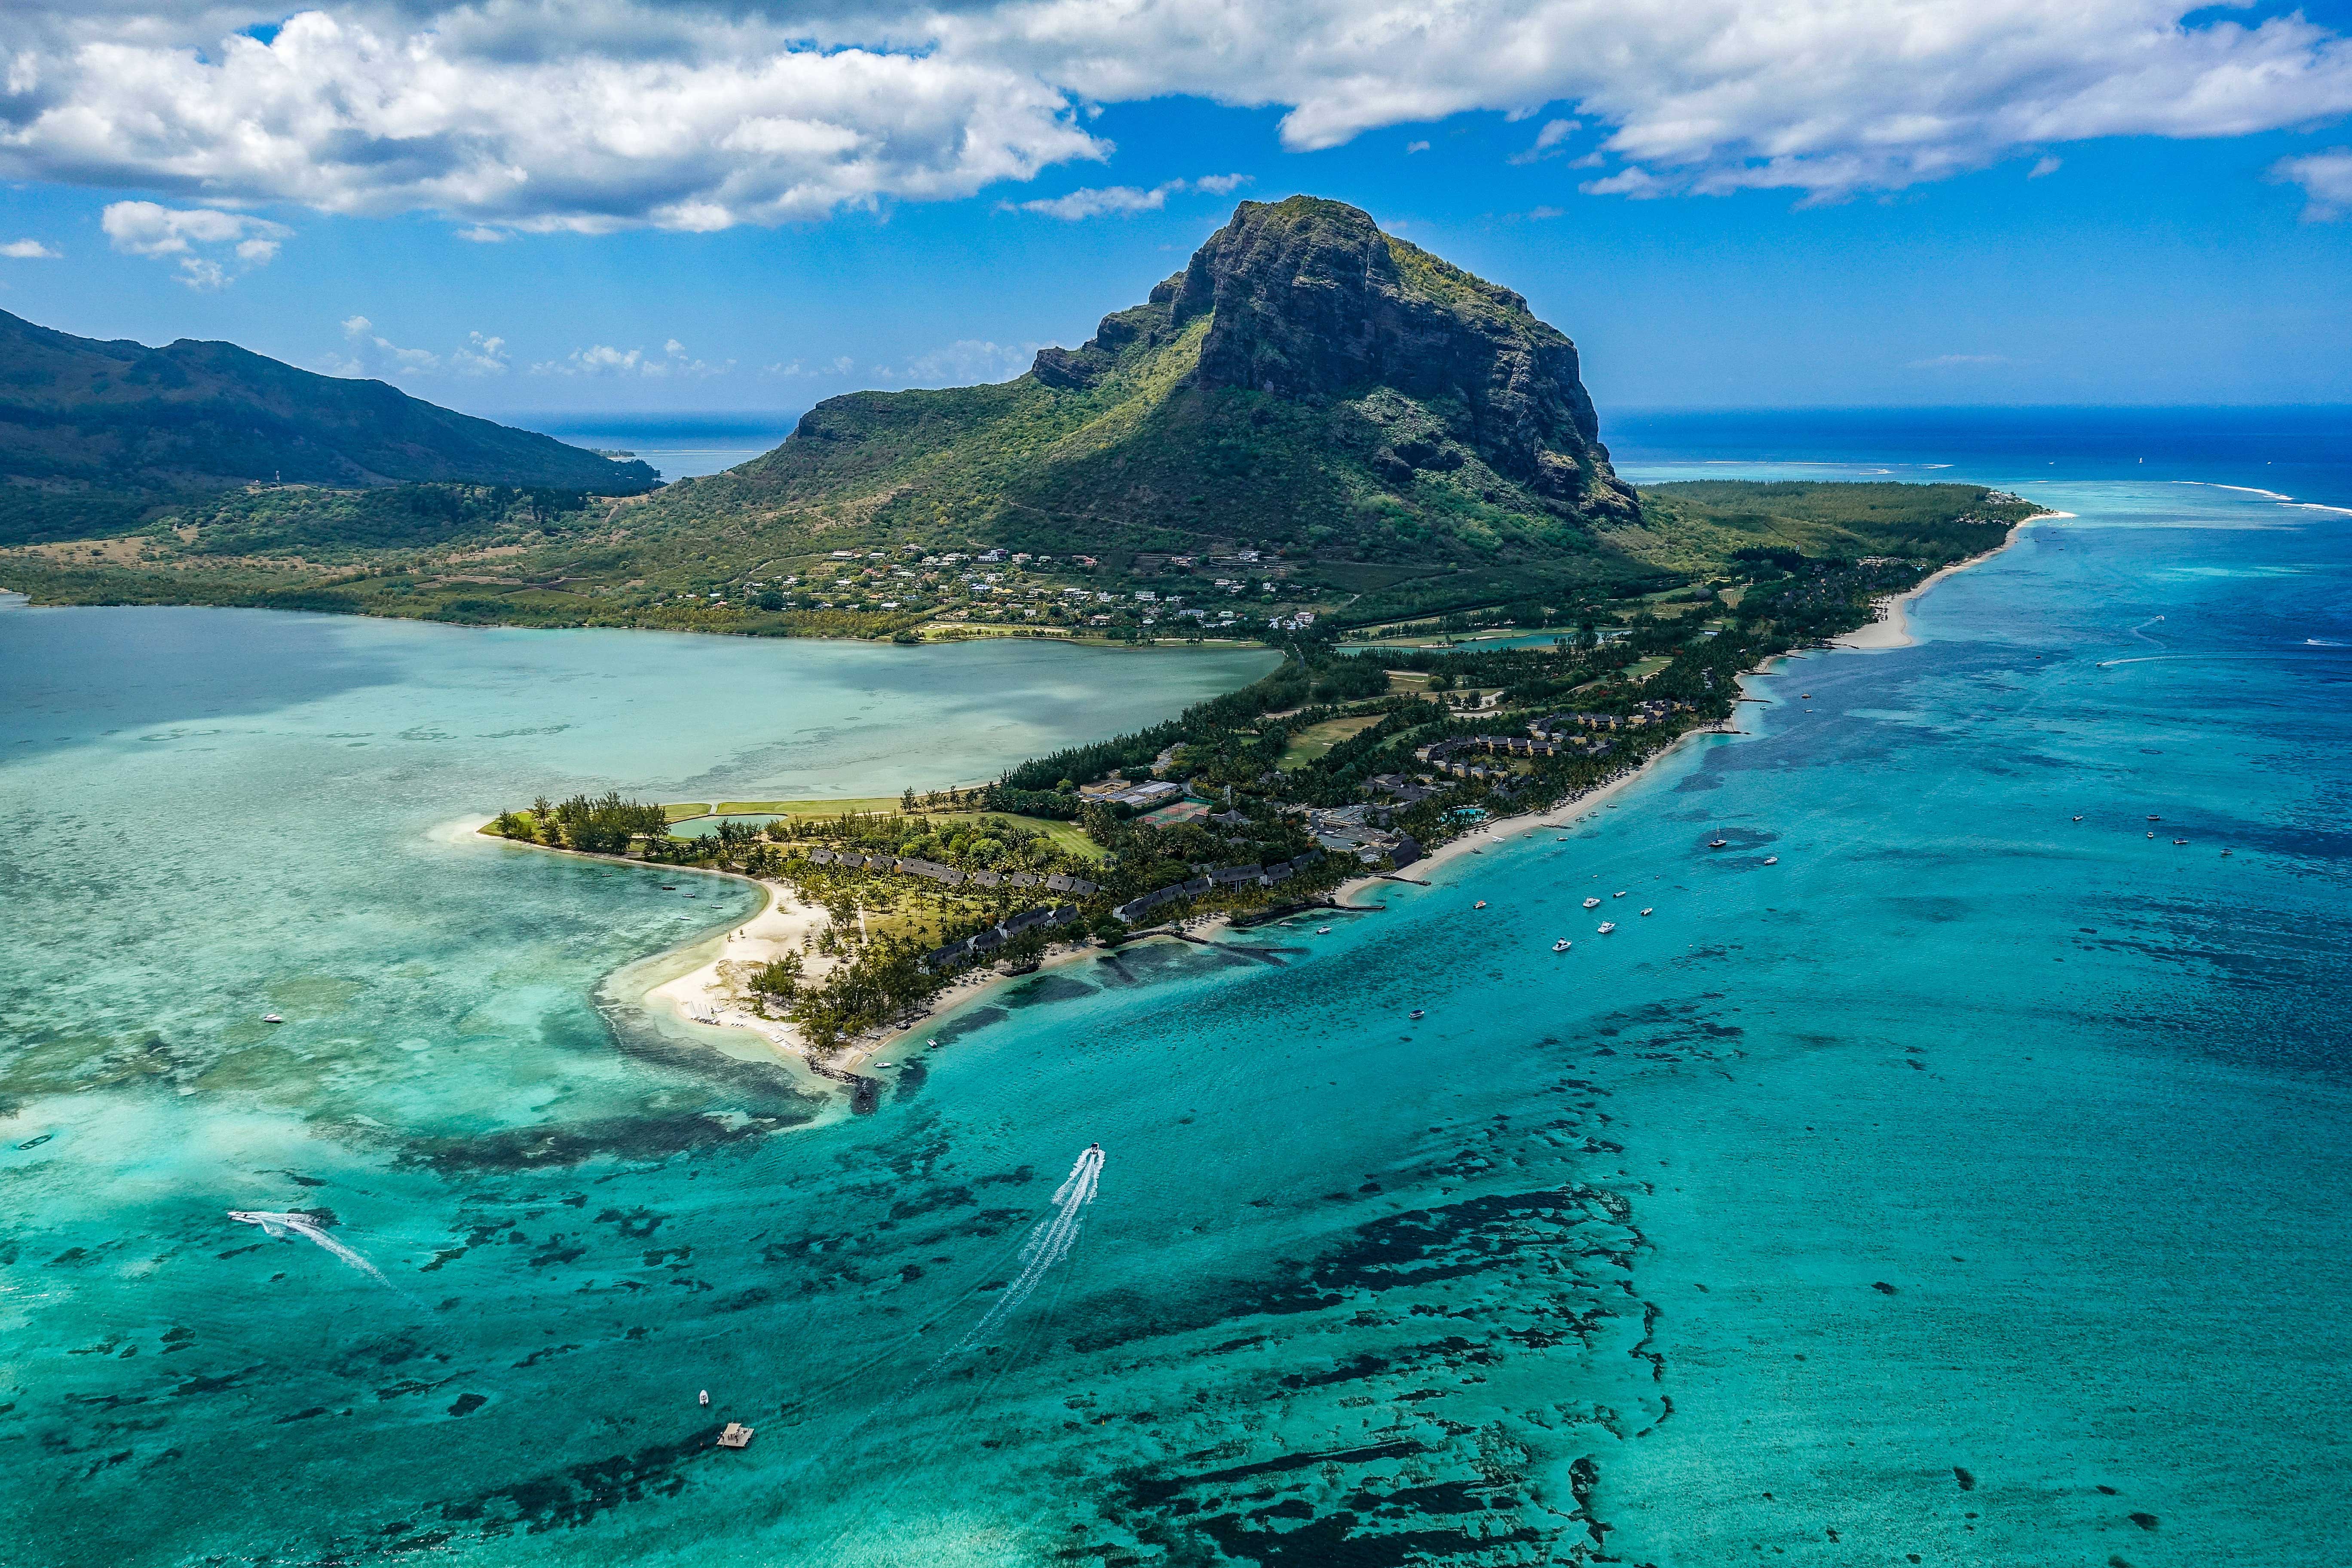 Полуостров Ле-Морн-Брабан с базальтовой скалой причудливой формы и изогнутой береговой линией считается одним из символов Маврикия.